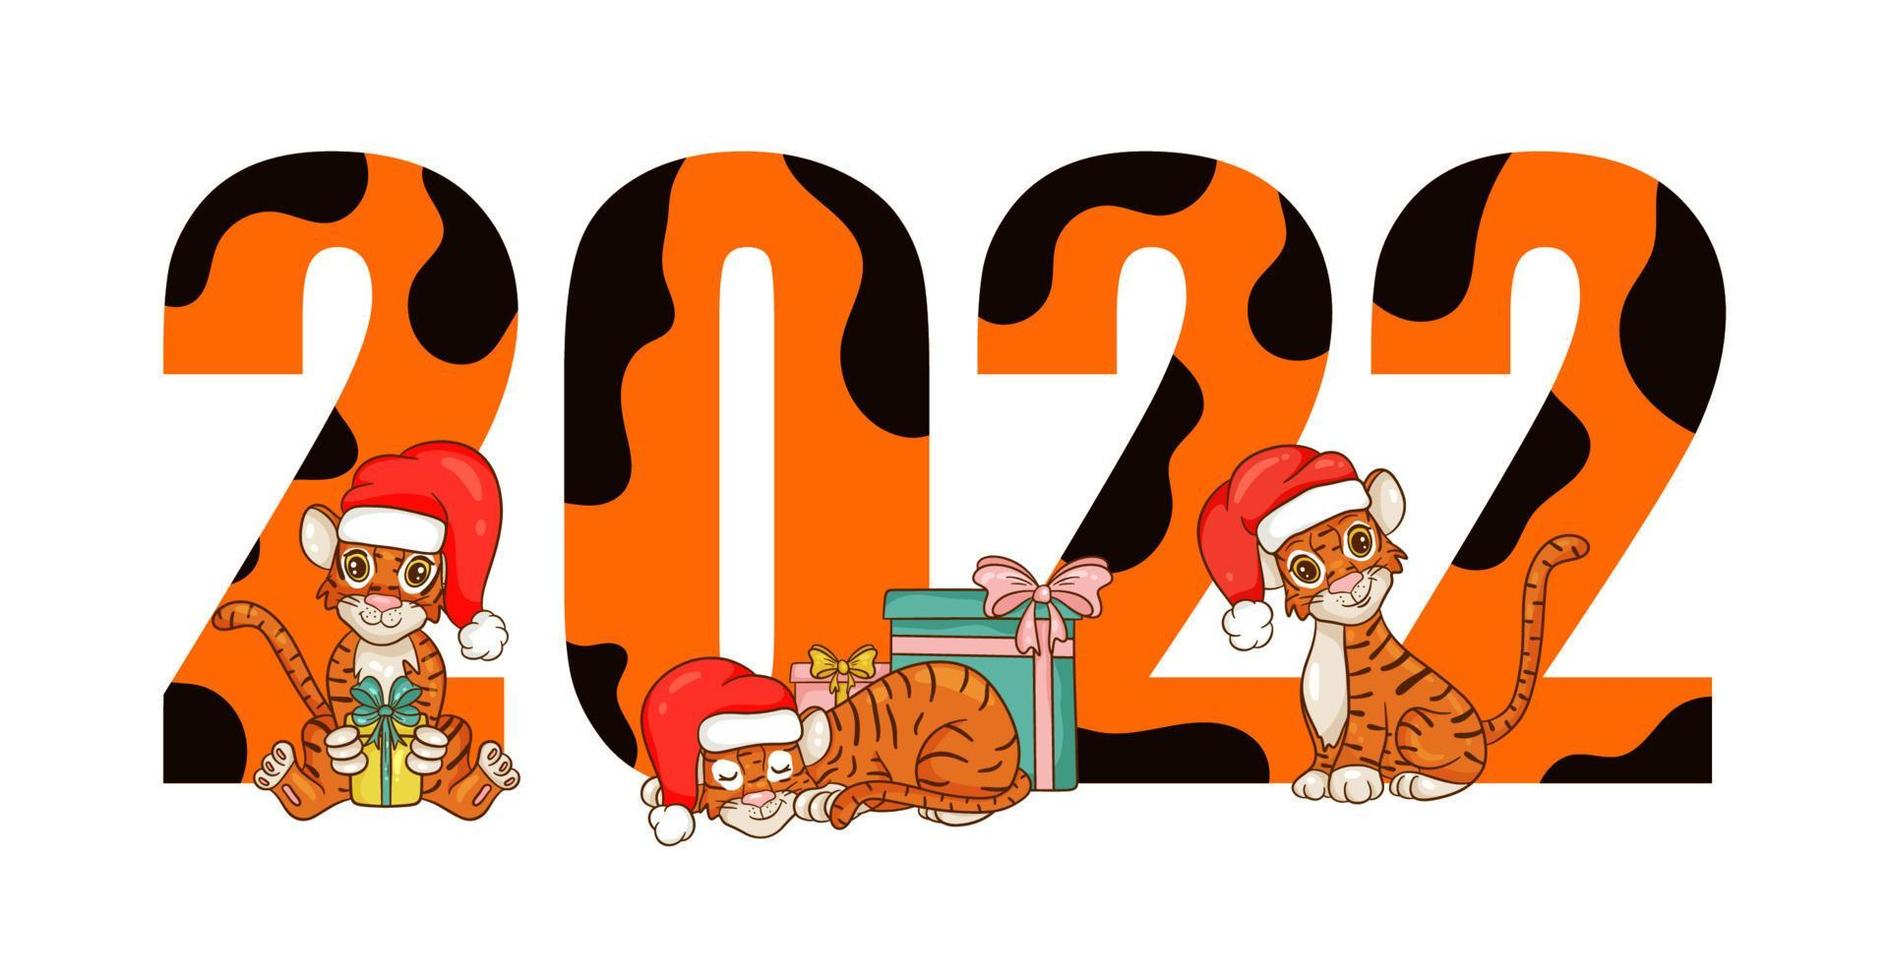 felice anno nuovo 2022 testo design con stile cartone animato con tigri. il simbolo dell'anno secondo il calendario cinese. brochure di design, modello, cartolina, banner. illustrazione vettoriale. vettore